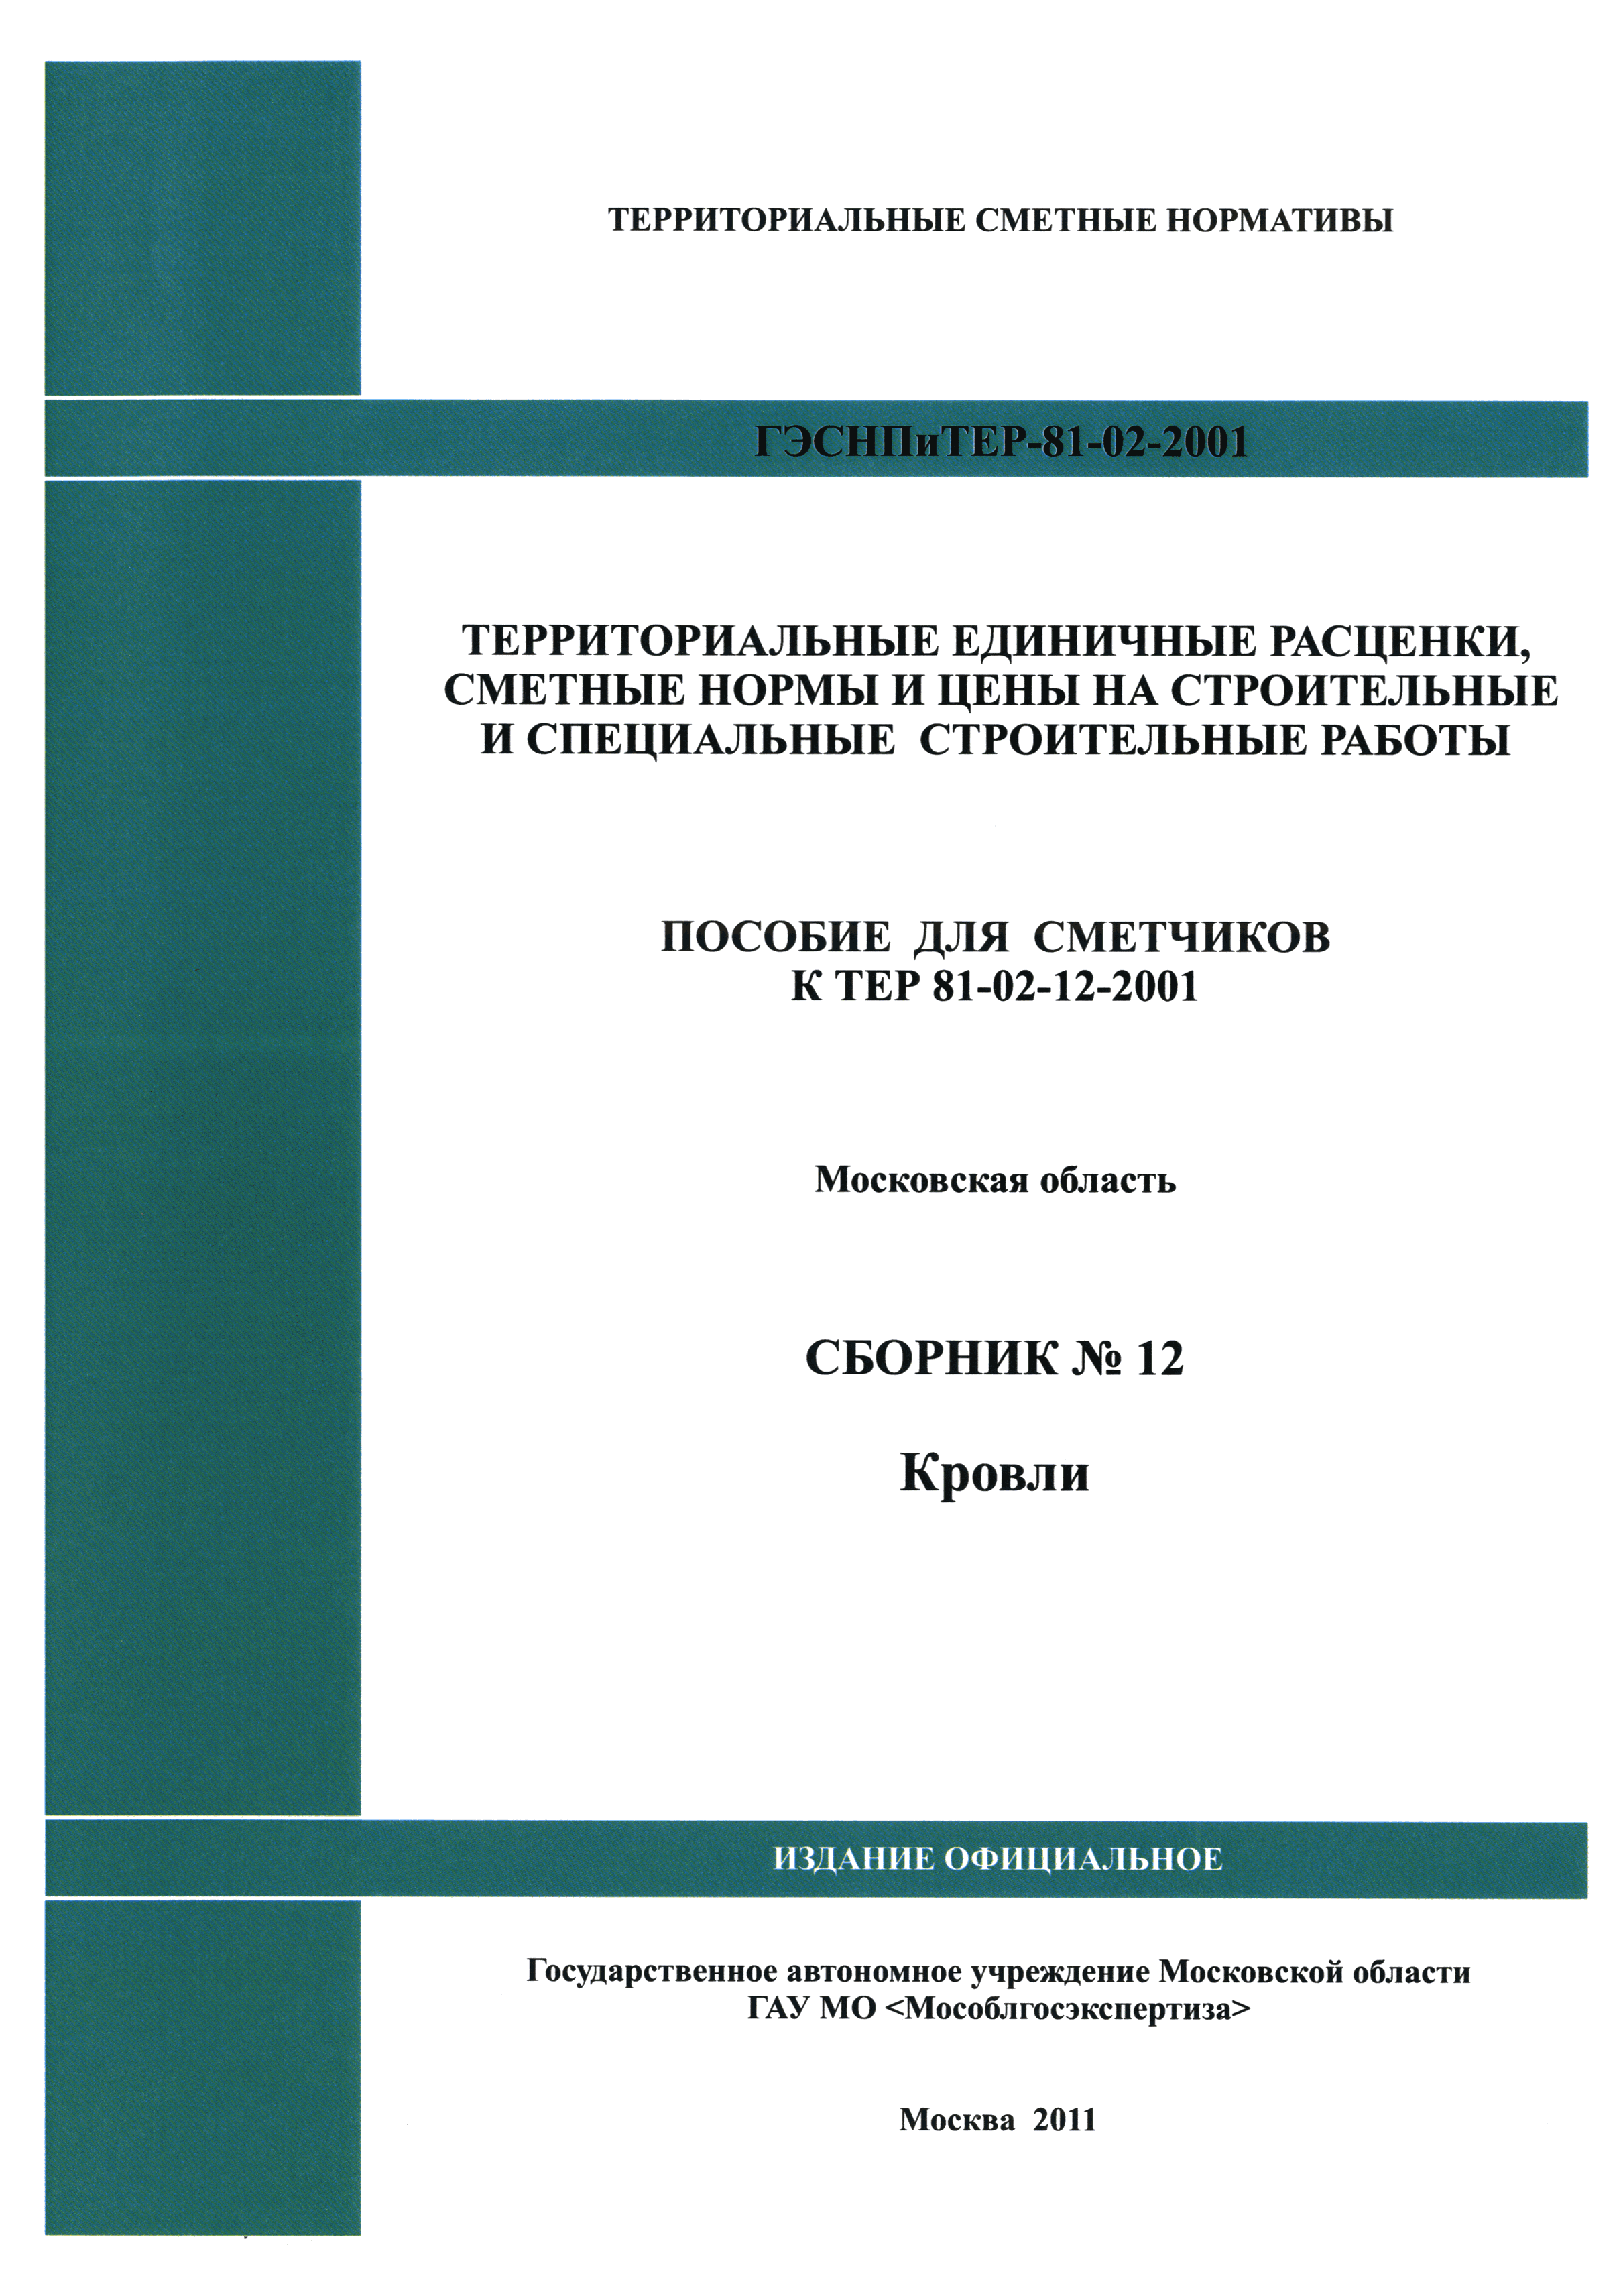 ГЭСНПиТЕР 2001-12 Московской области